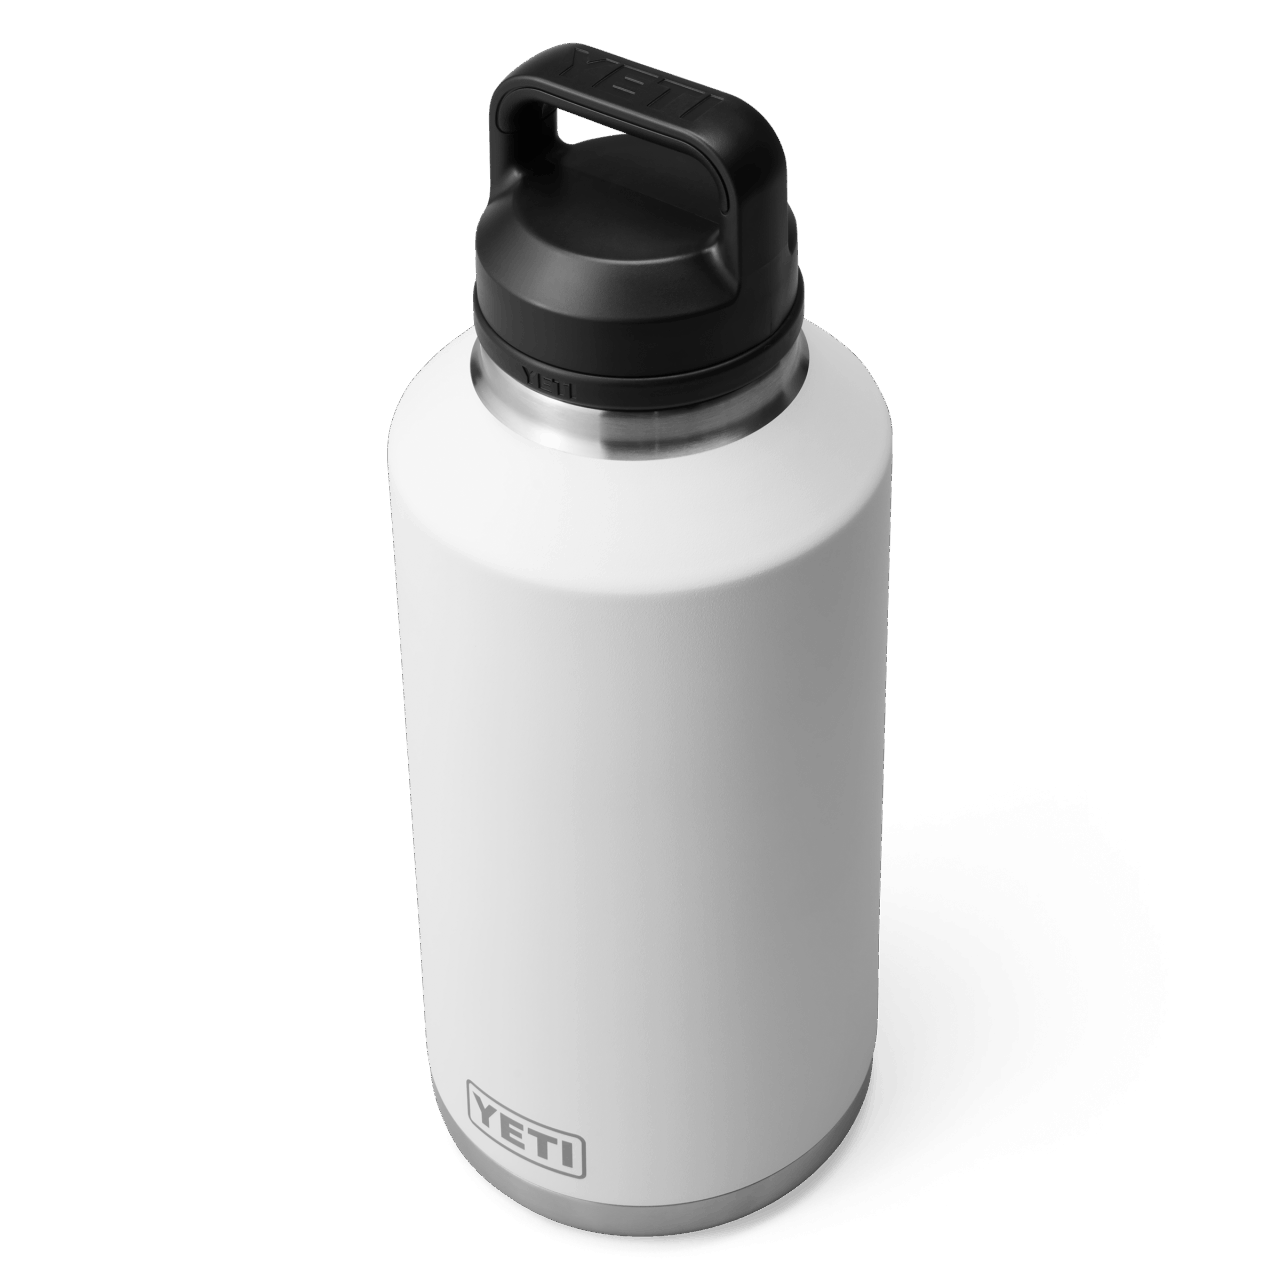 YETI Rambler 64 oz (1,9l) Bottle- white